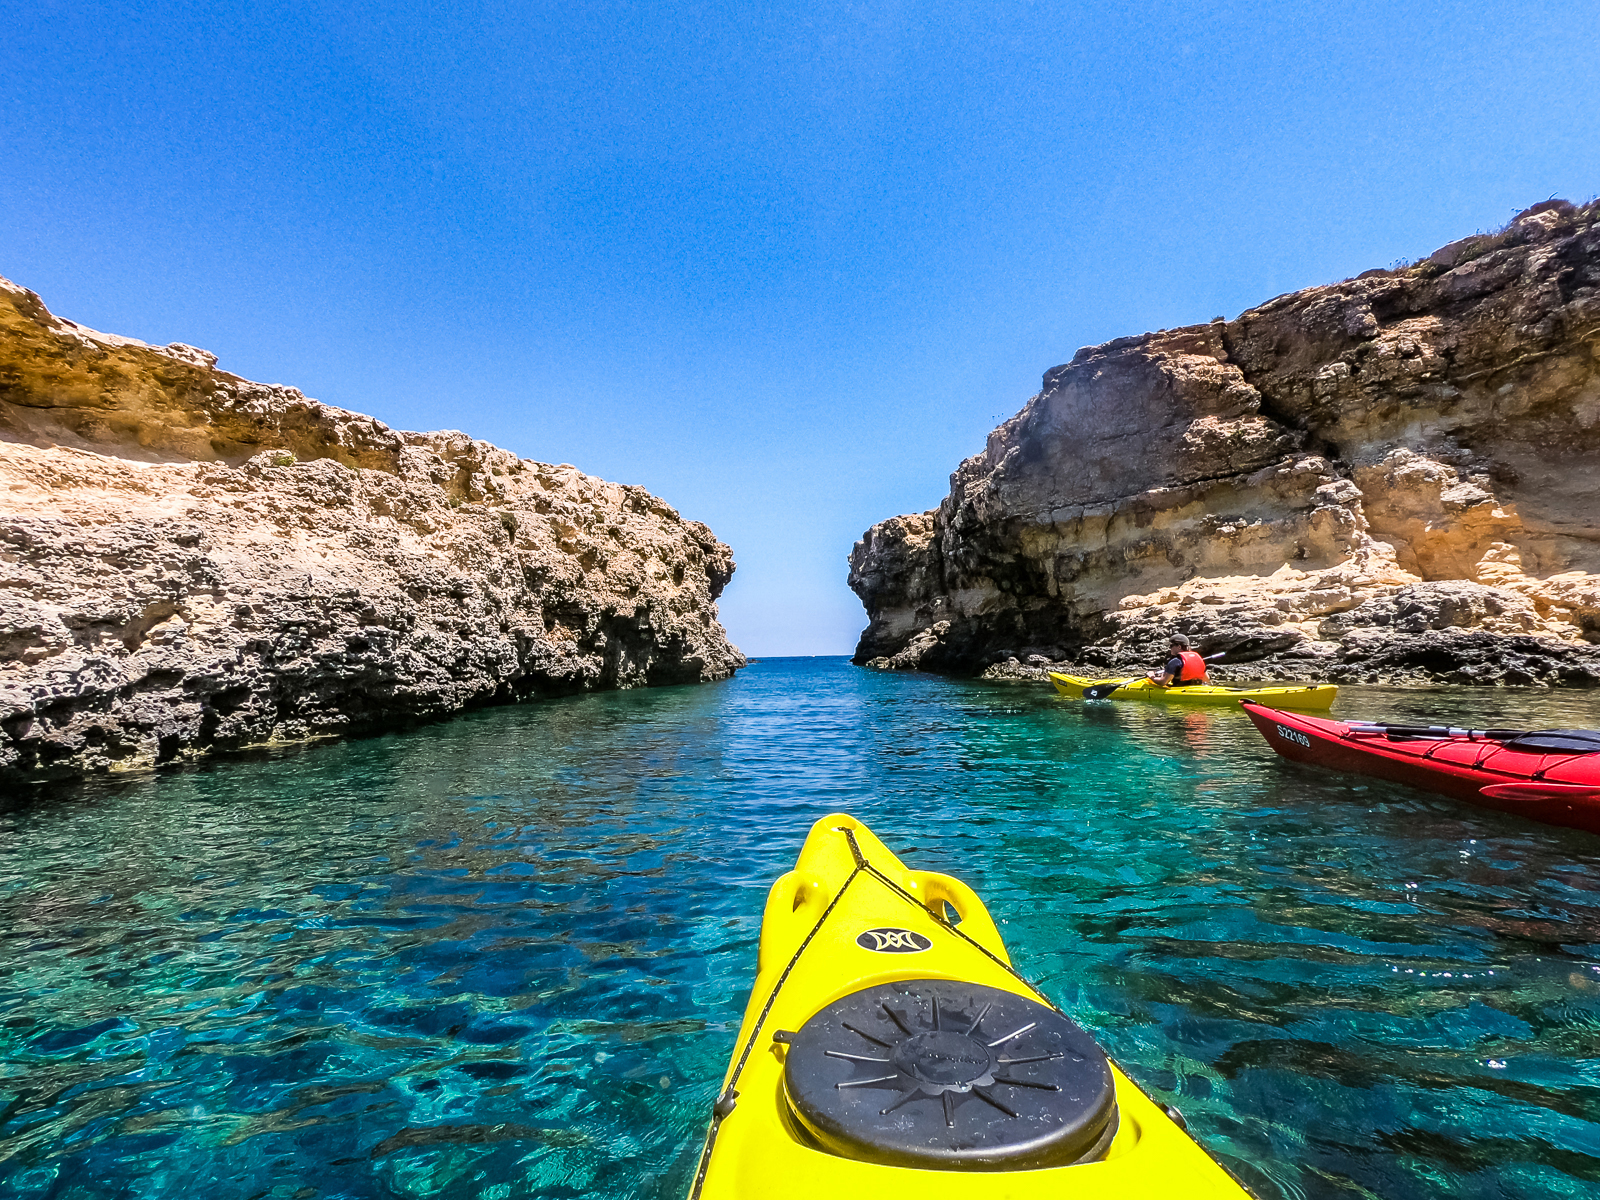 Kayaking around Comino with Kayak Gozo in Malta